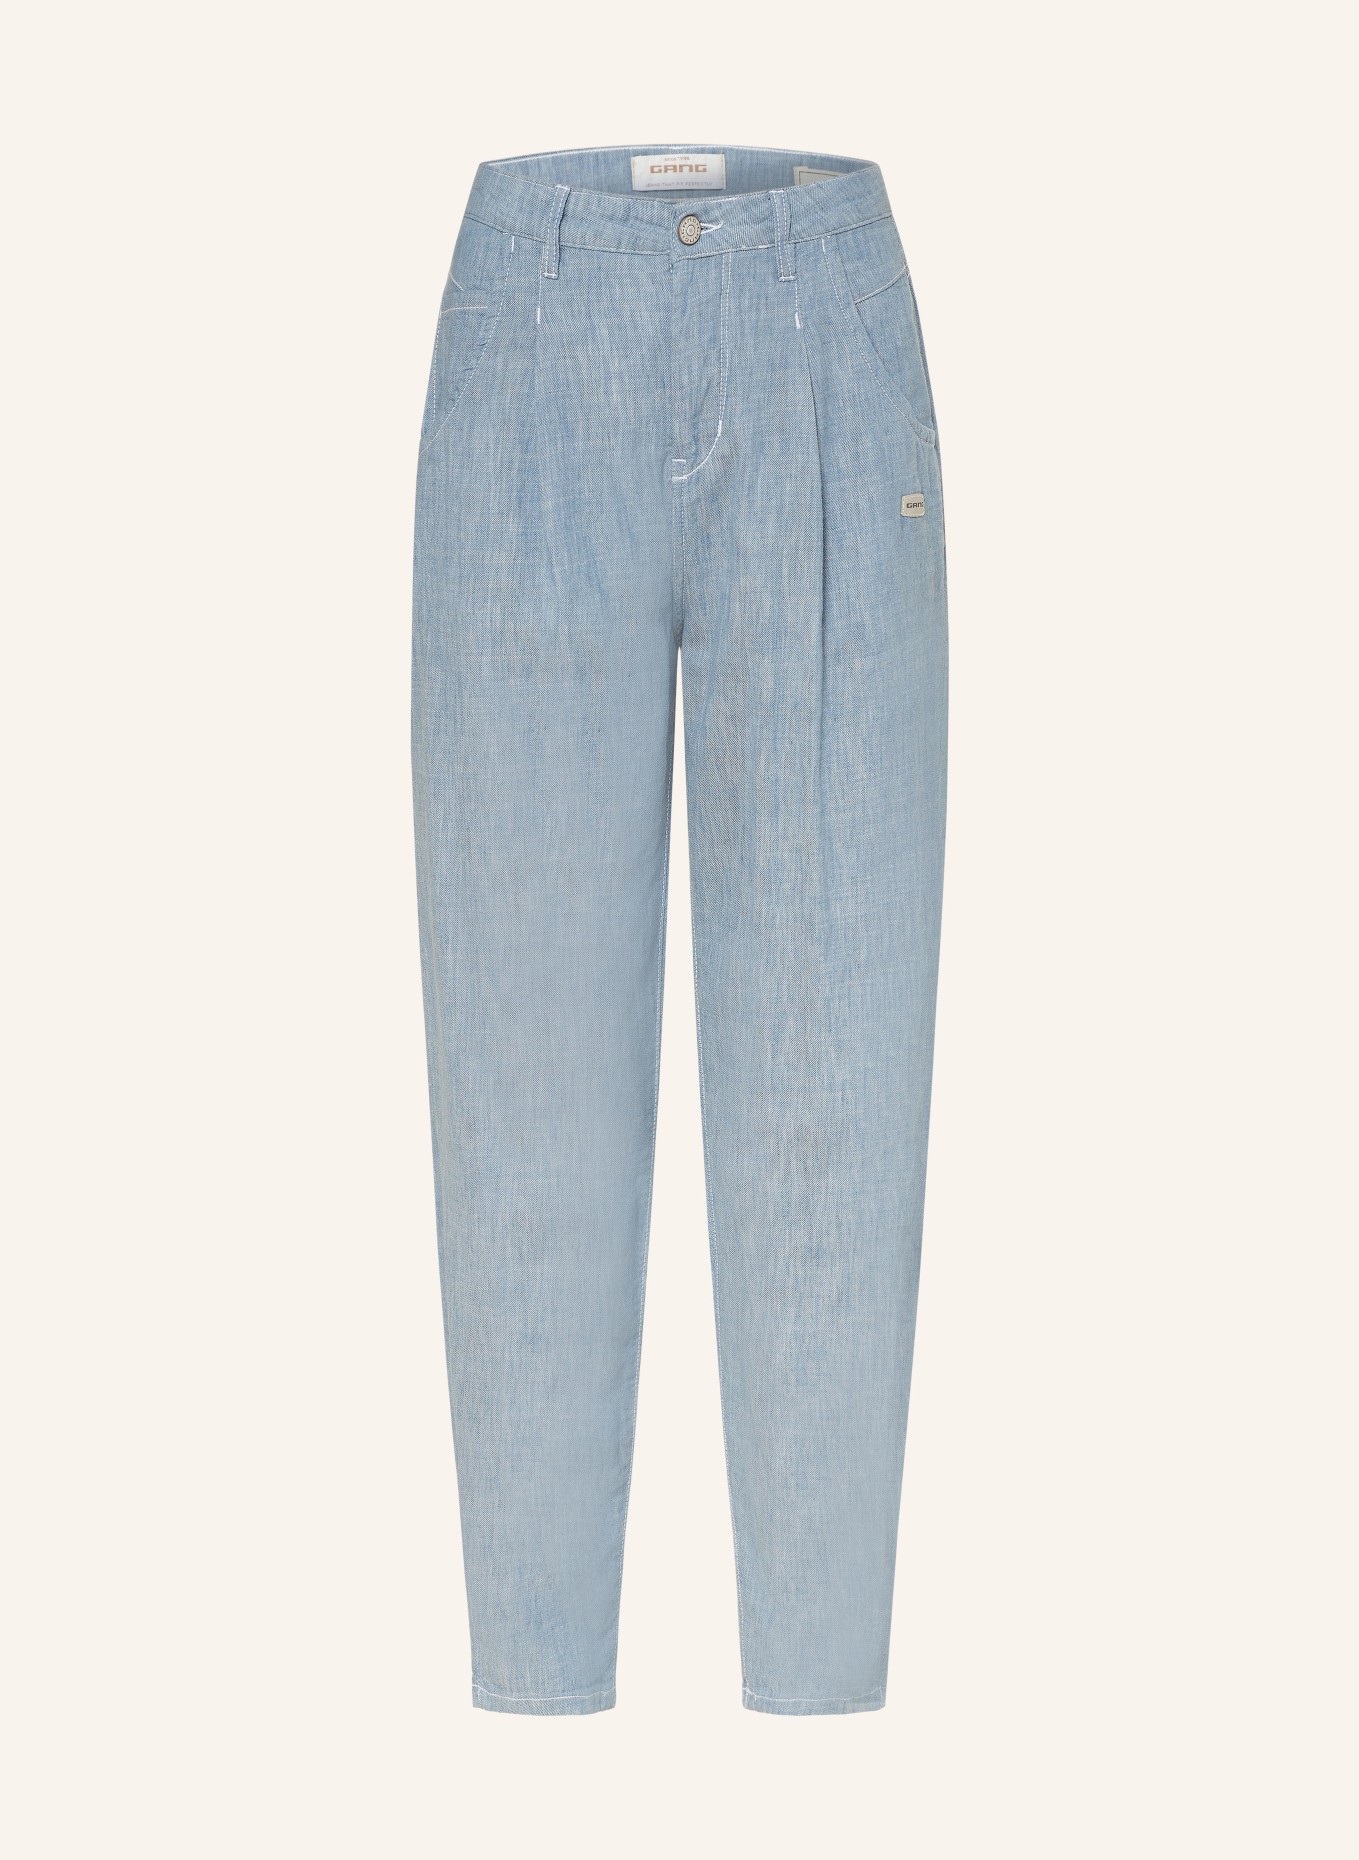 GANG Spodnie 94SILVIA w stylu jeansowym, Kolor: 6503 ice blue (Obrazek 1)